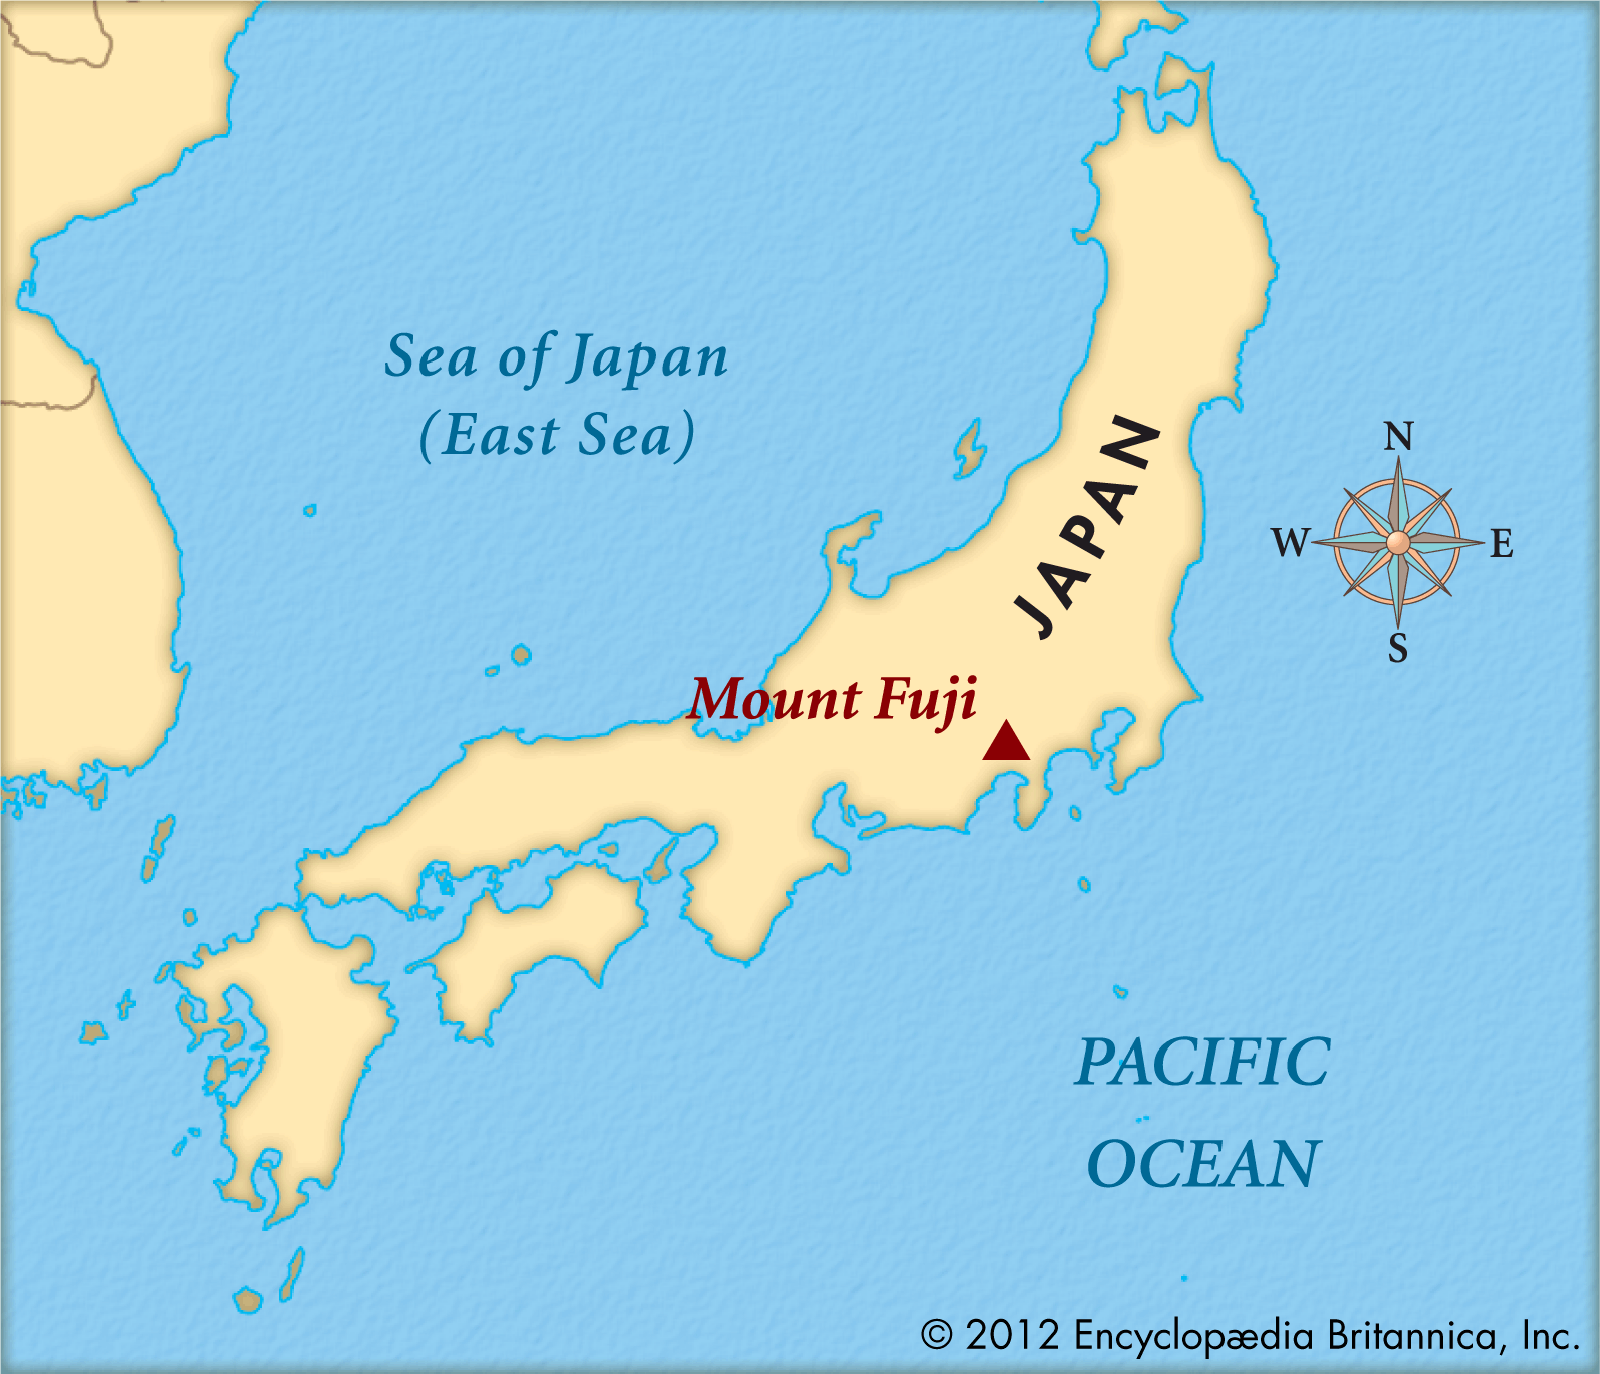 危险预警，琉球群岛火山集体爆发！日本富士山积雪开始融化